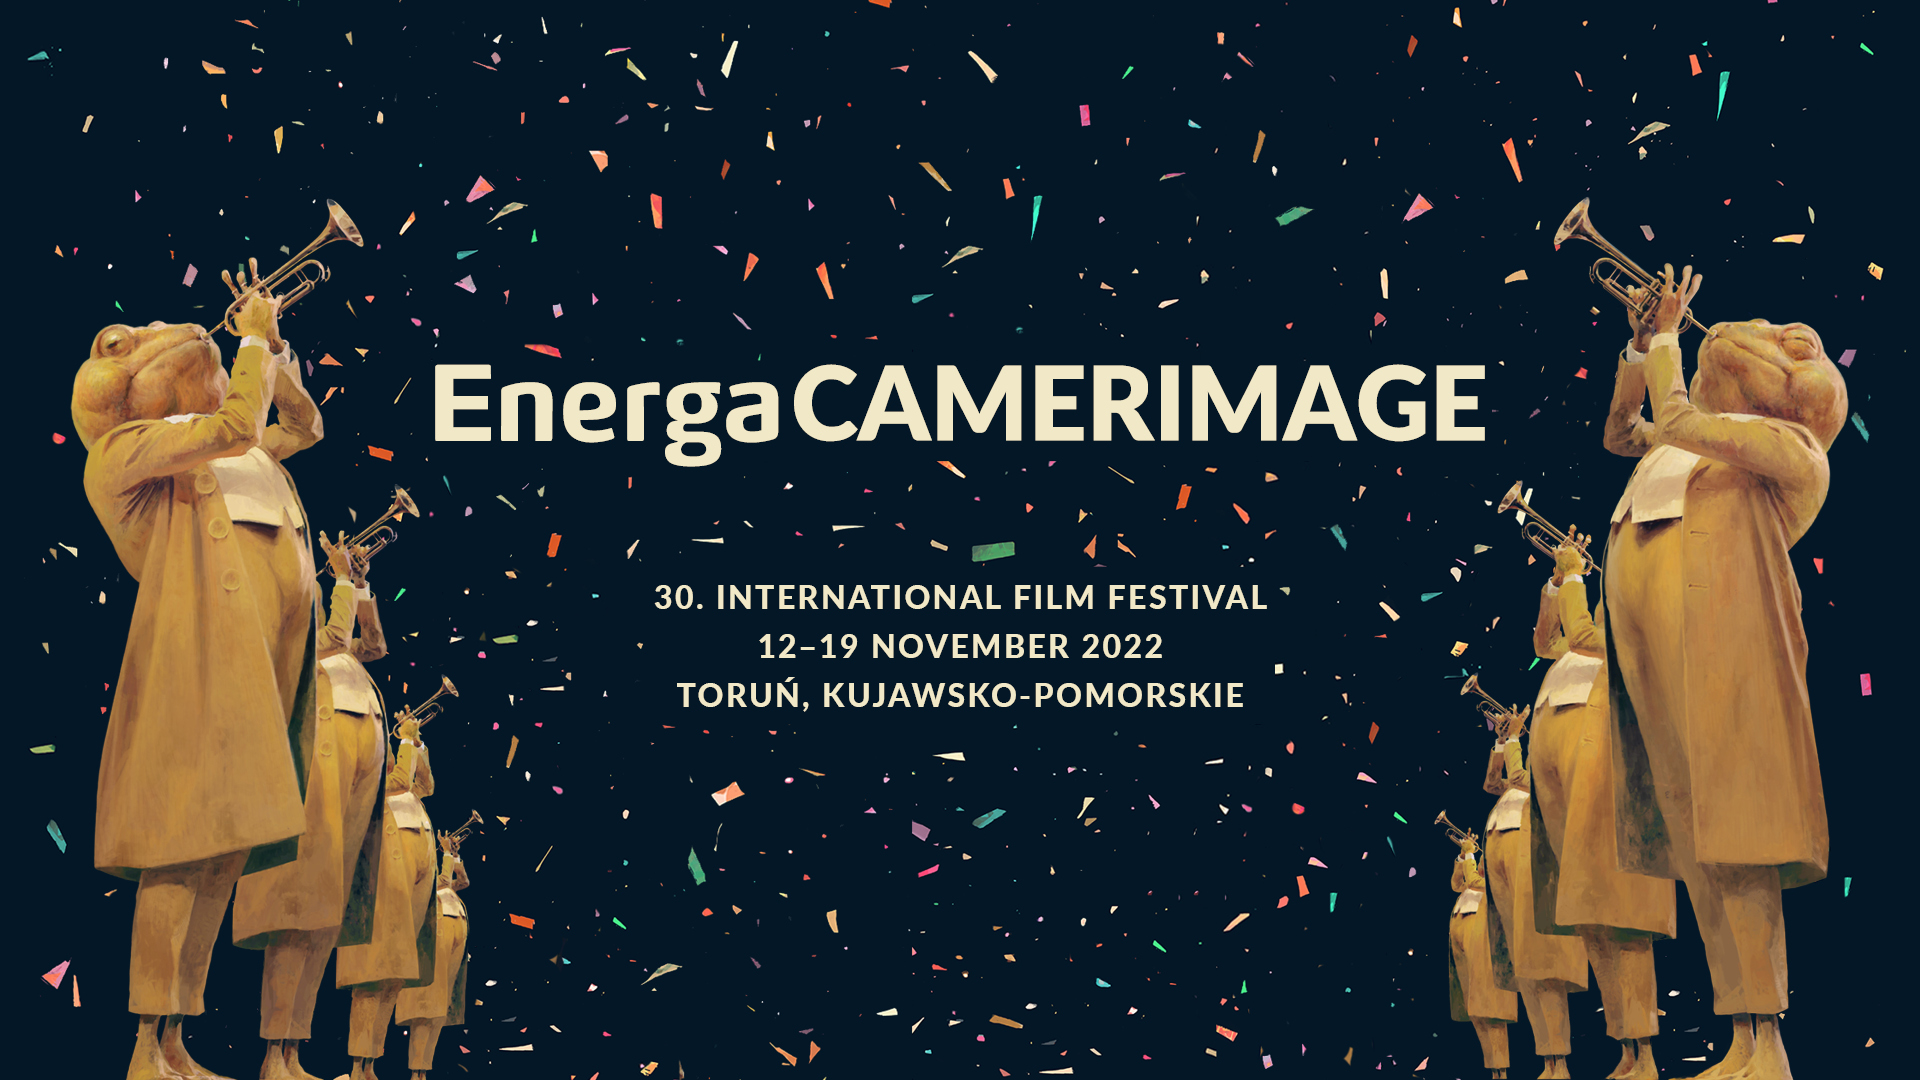 Wielkie święto kina w Toruniu – rozpoczął się międzynarodowy festiwal EnergaCAMERIMAGE